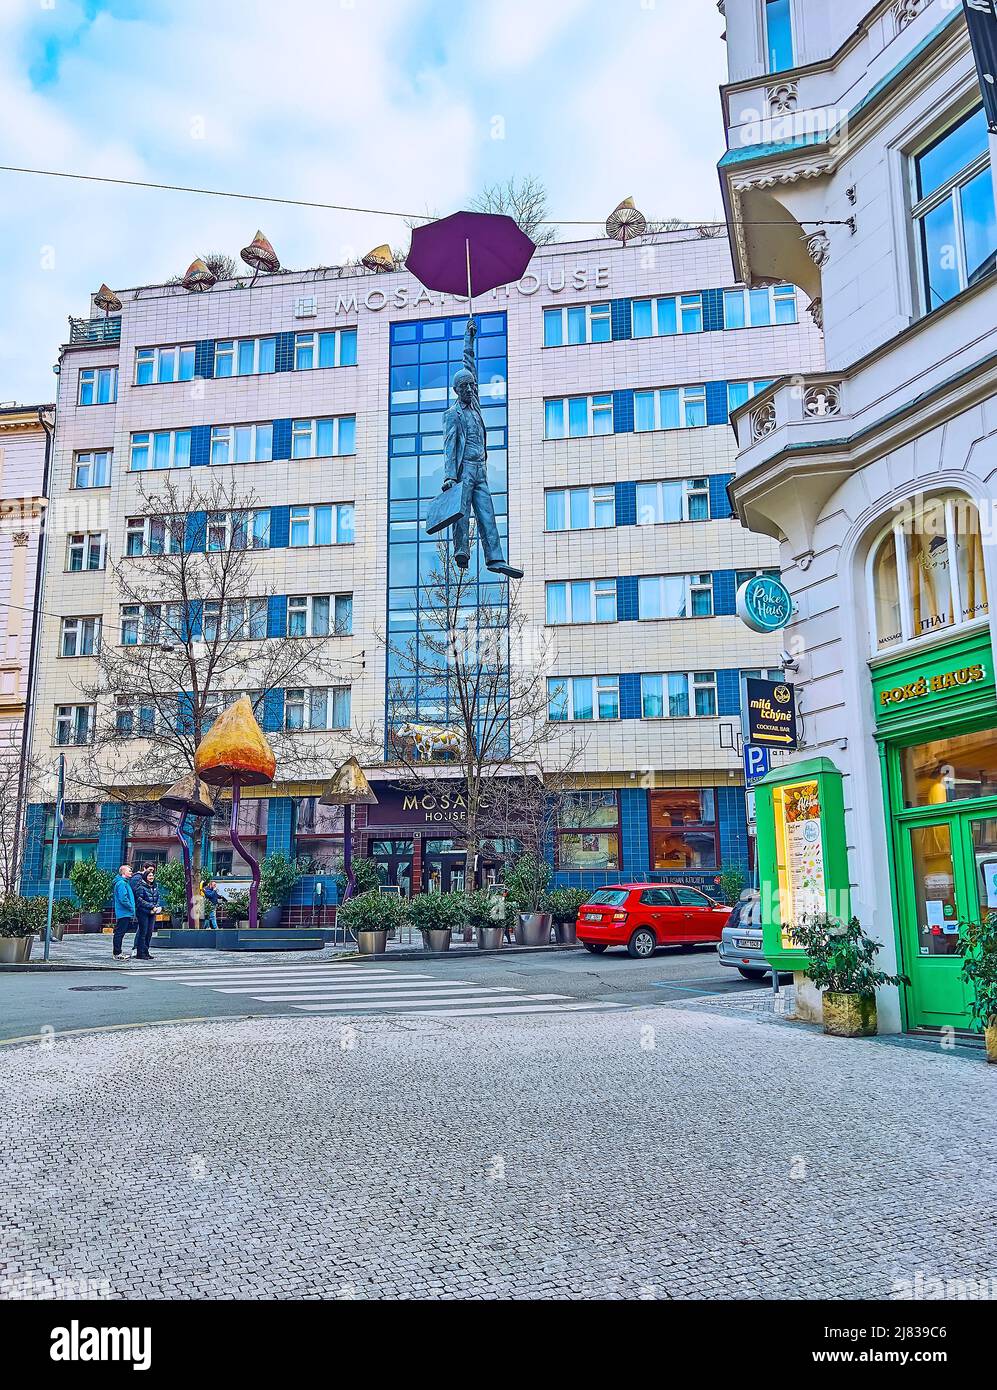 PRAG, TSCHECHISCHE REPUBLIK - 5. MÄRZ 2022: Die Skulptur des hängenden Regenschirmmenschen oder eine leichte Unsicherheit vor dem Mosaic House Design Hotel, Odboru Stre Stockfoto